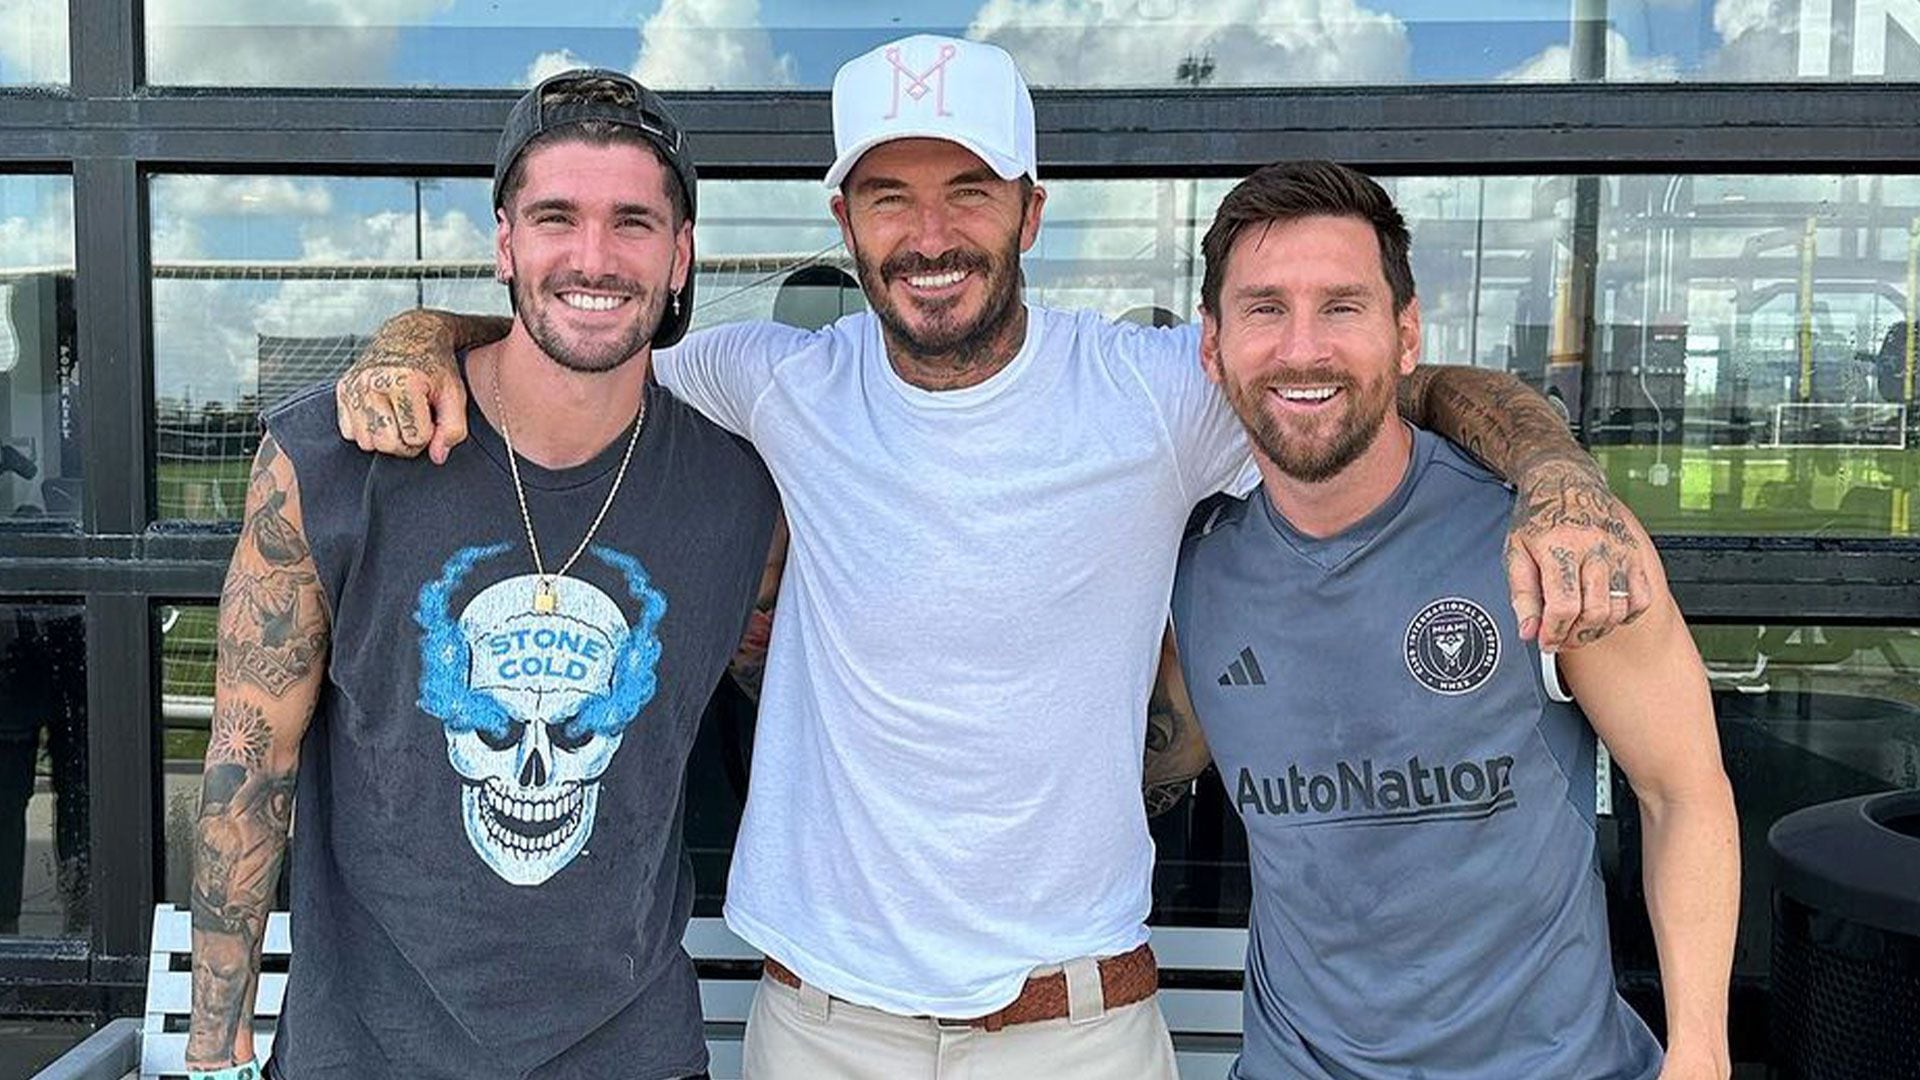 Dos campeones del mundo”: Beckham publicó la foto del reencuentro entre Messi y Rodrigo De Paul y disparó las reacciones más divertidas - Infobae